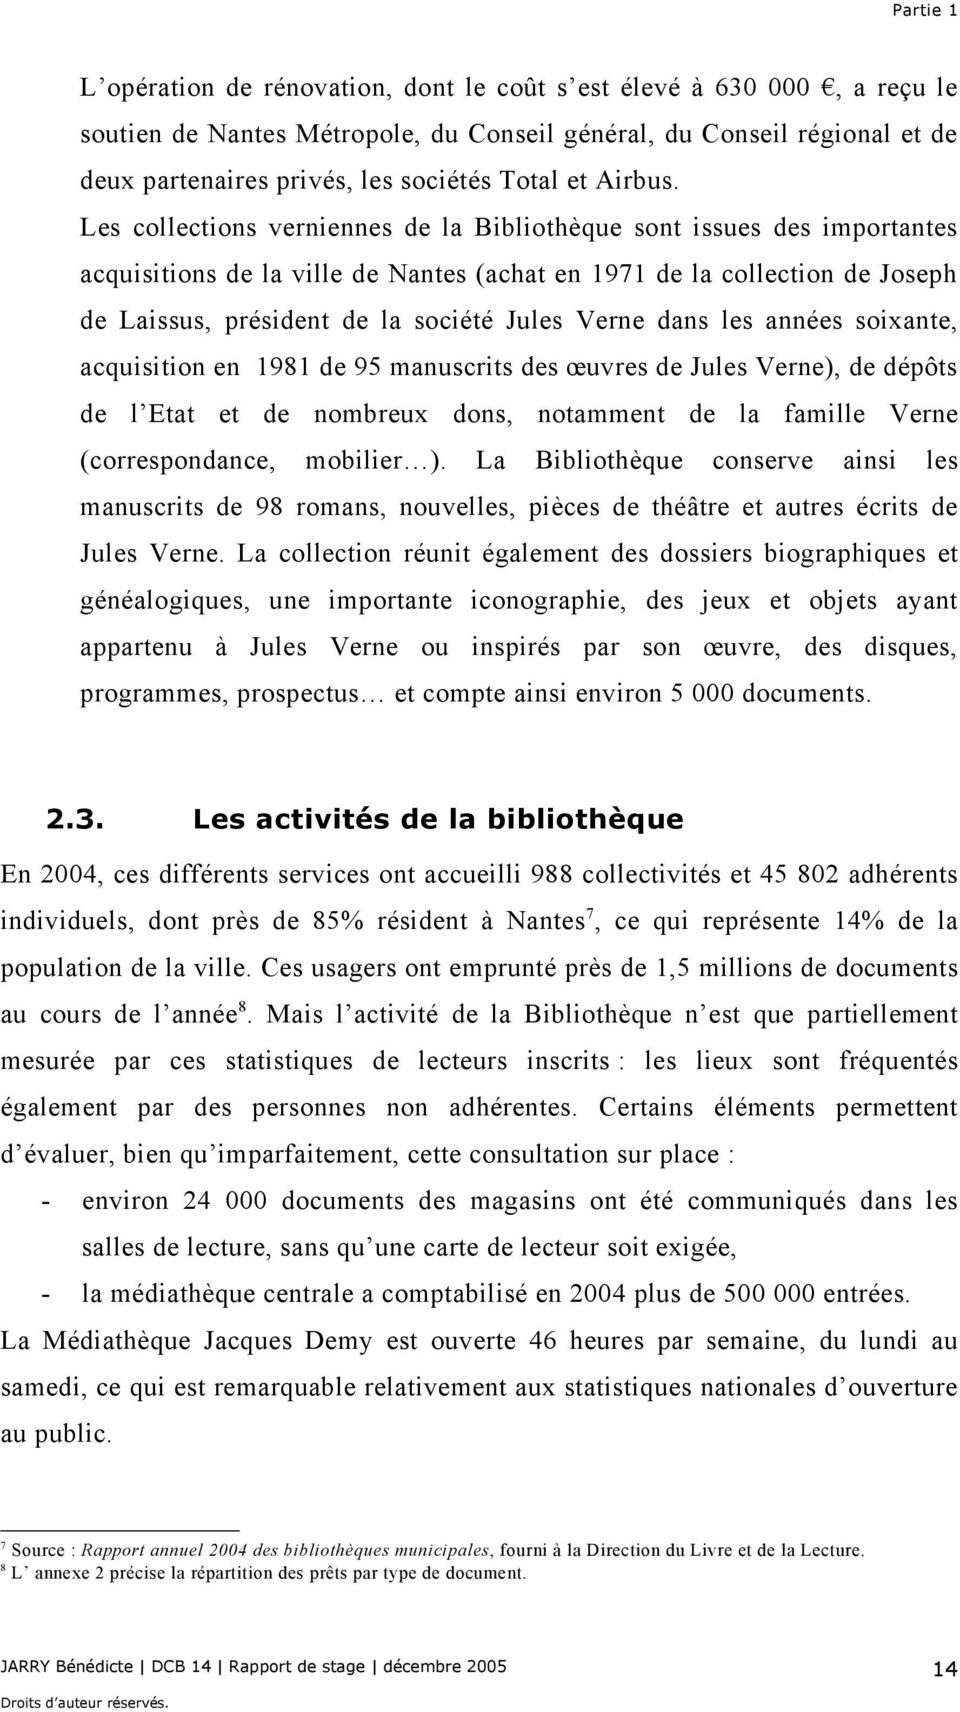 Les collections verniennes de la Bibliothèque sont issues des importantes acquisitions de la ville de Nantes (achat en 1971 de la collection de Joseph de Laissus, président de la société Jules Verne